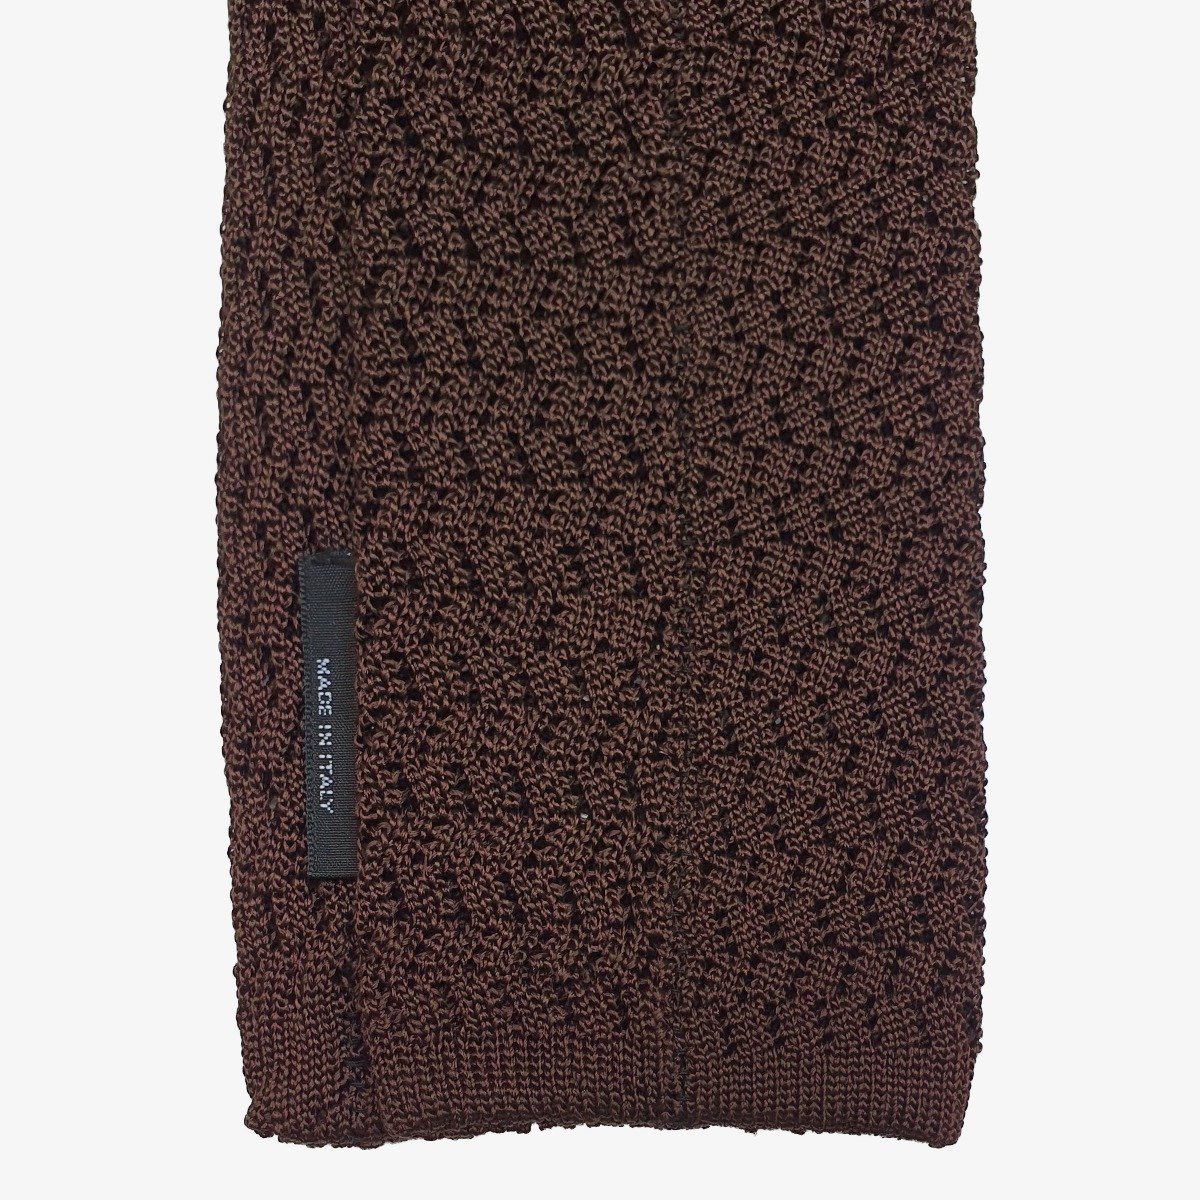 Shibumi Firenze dark brown zigzag knitted silk tie